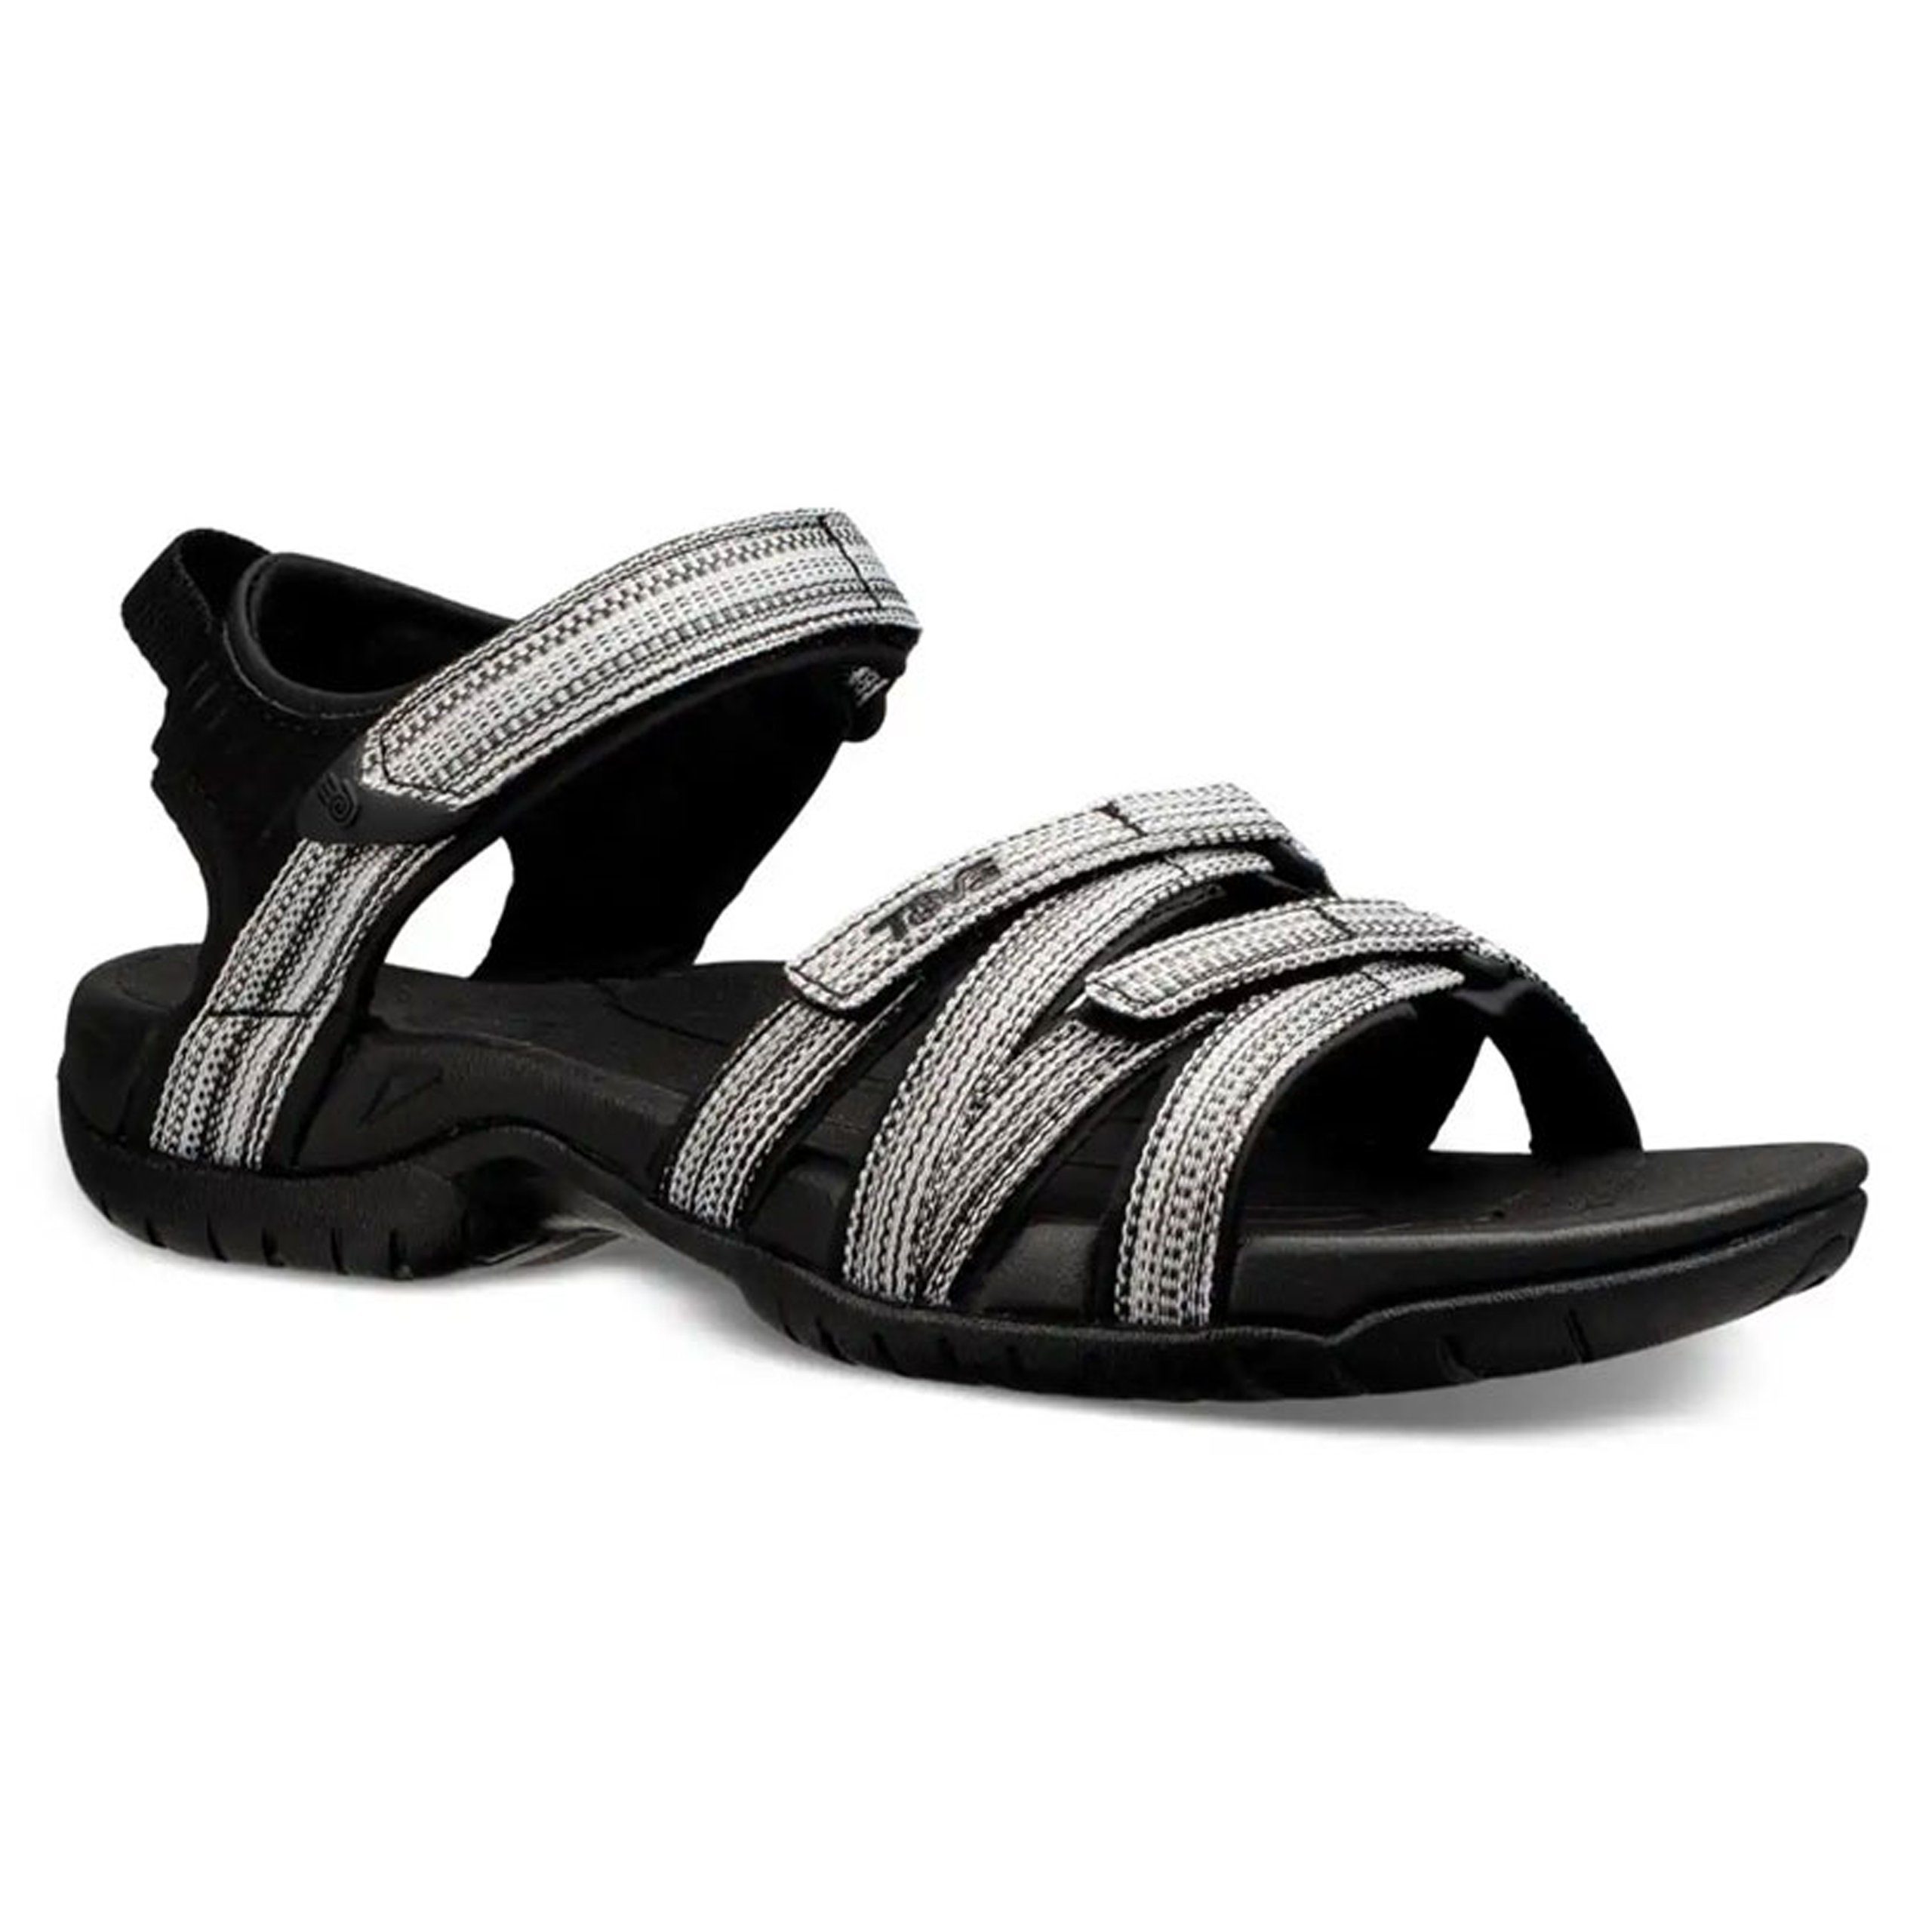 Tirra Teva - blackwhitemulti Women's Sandale bequeme Outdoorsandale Damen Teva